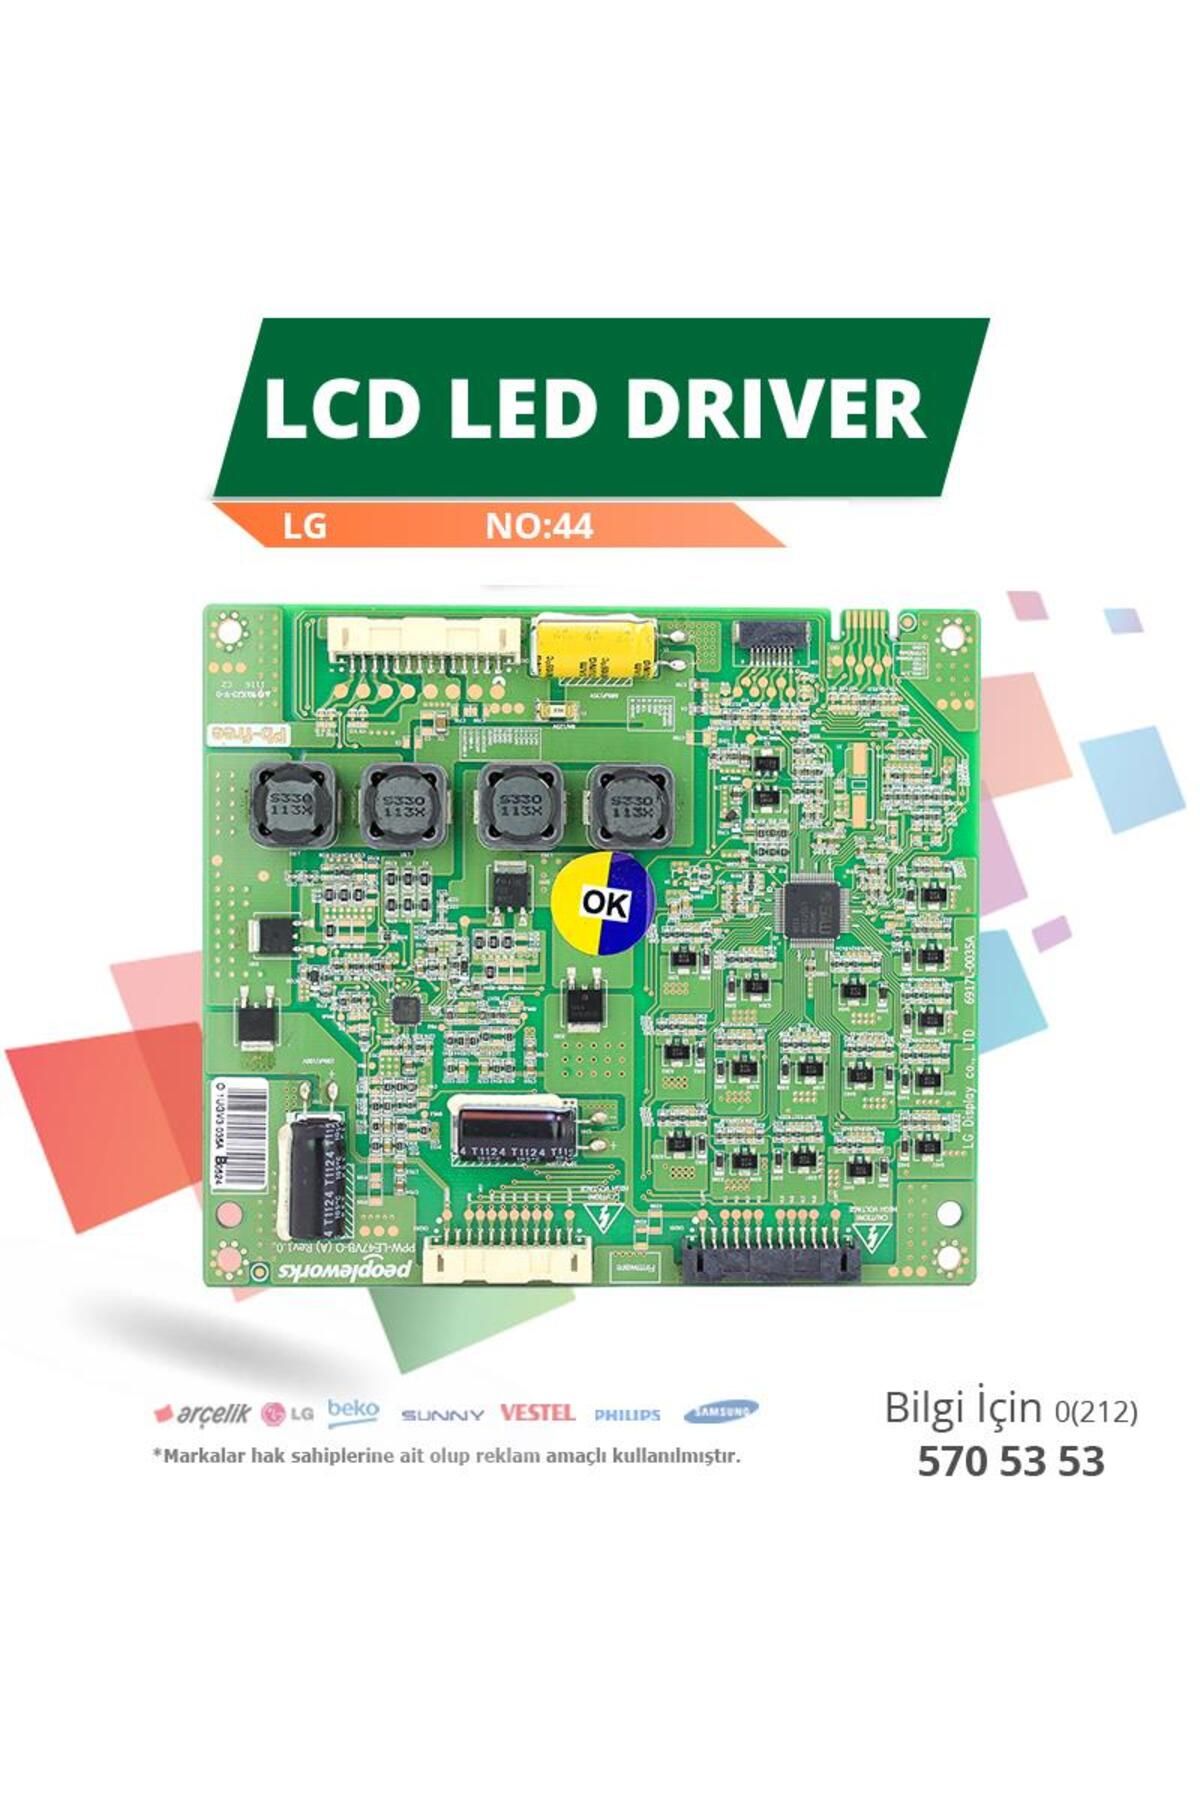 LG LCD LED DRİVER LG (6917L-0035A,PPW-LE47VB-O (A) REV1.0) (NO:44)